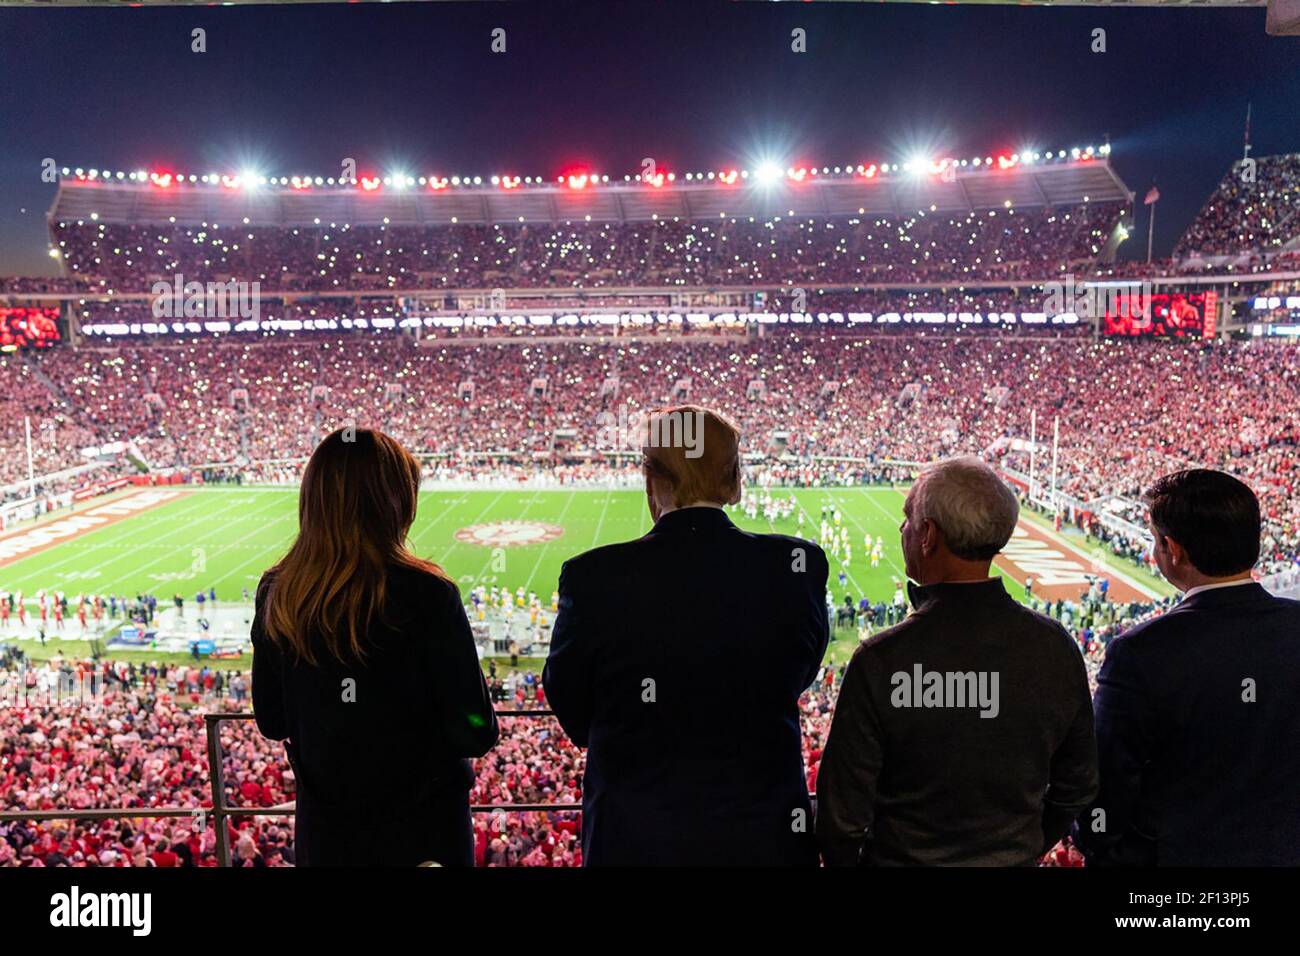 Präsident Donald Trump und First Lady Melania Trump beobachten die Aktion auf dem Feld im Bryant-Denny Stadium Samstag, den 9 2019. November, während sie das Fußballspiel der University of Alabama -Louisiana State University in Tuscaloosa Ala besuchen Stockfoto